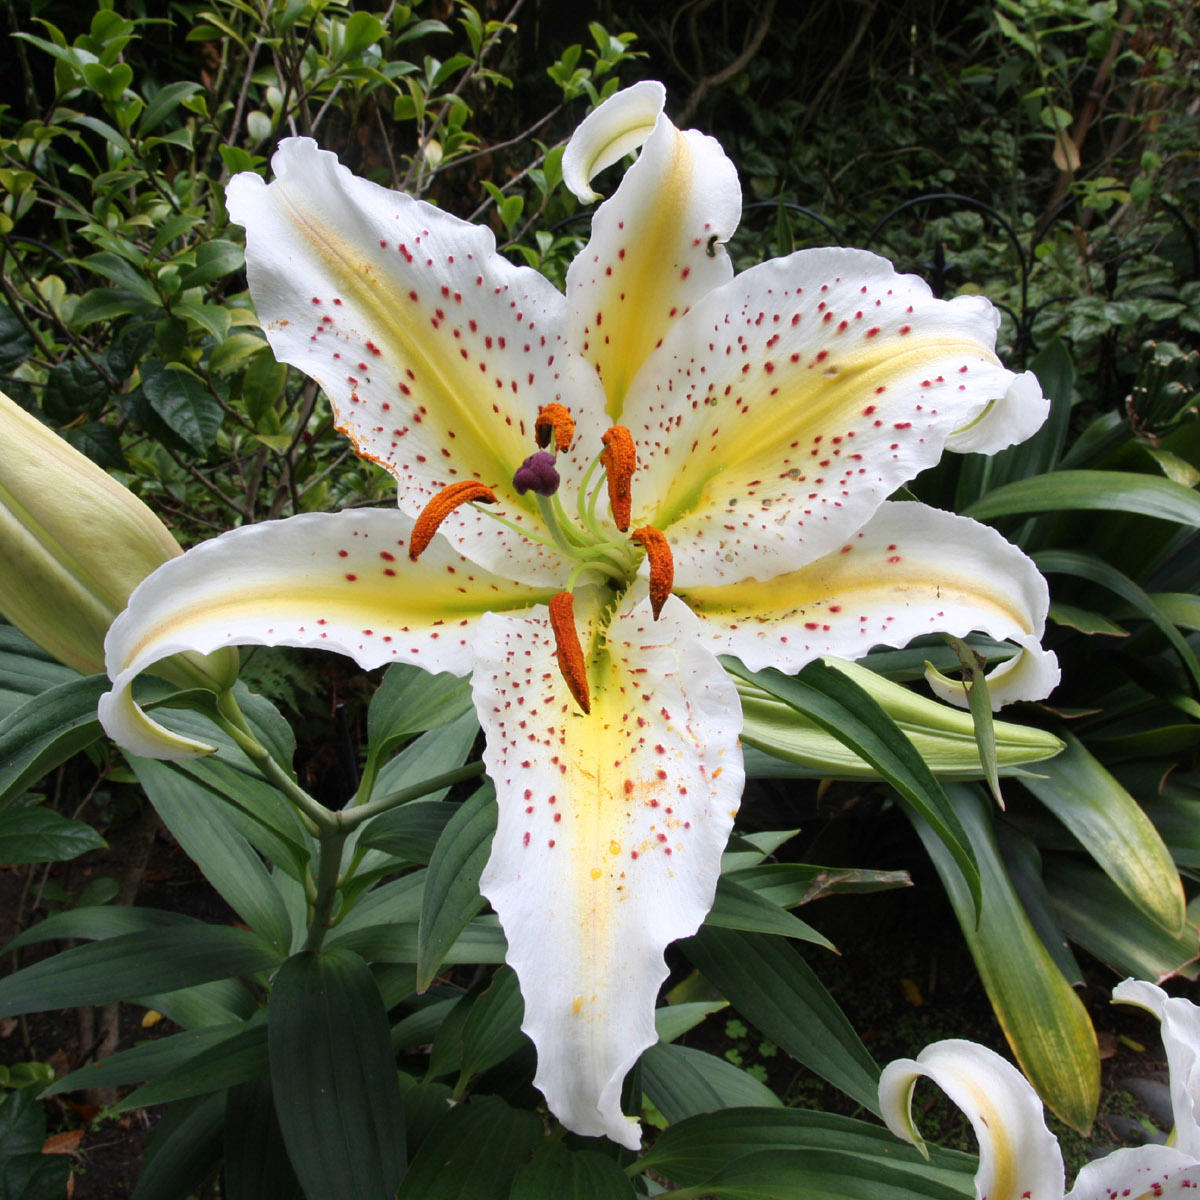 Gilded Lily Ineke for women de kullanılaz Zambak Çiçeği resimi doğal 119001187885-original.jpg